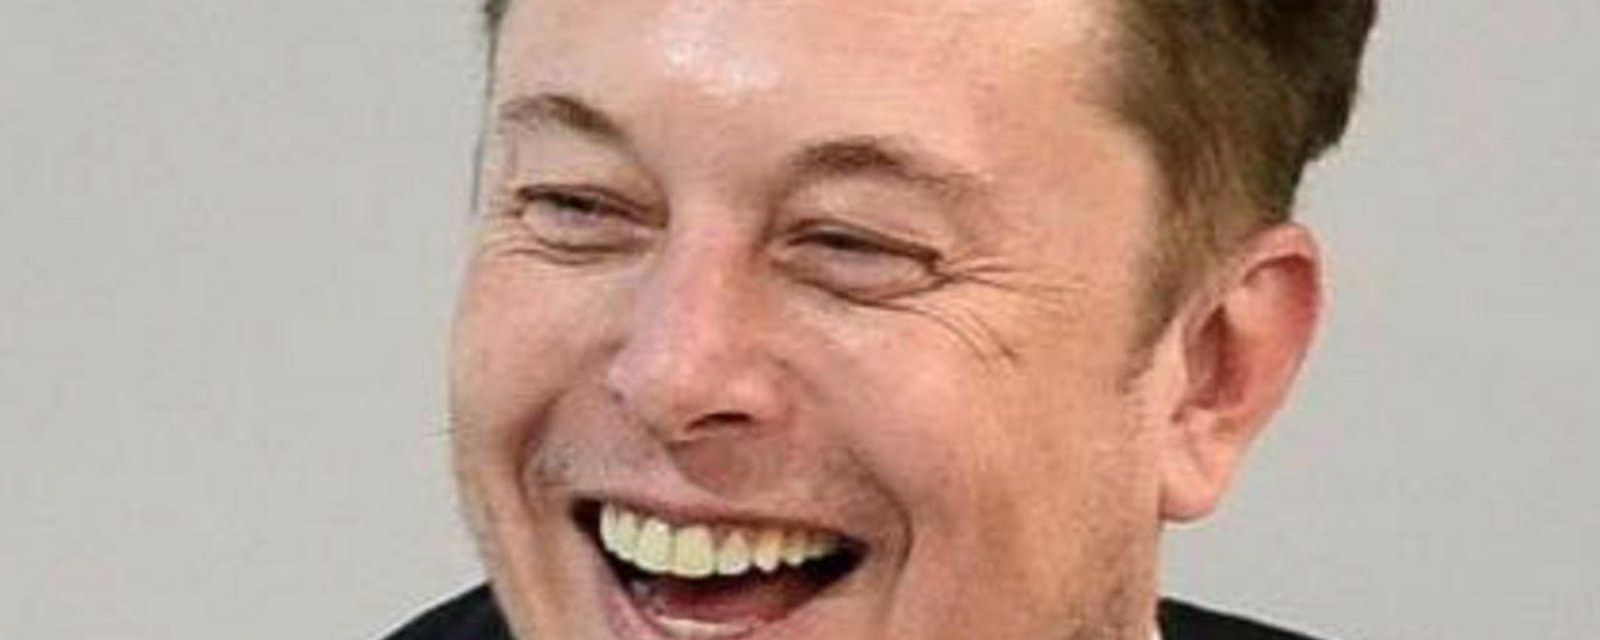 Un employé handicapé de Twitter apprend qu'il a été licencié quand Elon Musk se moque de lui en ligne